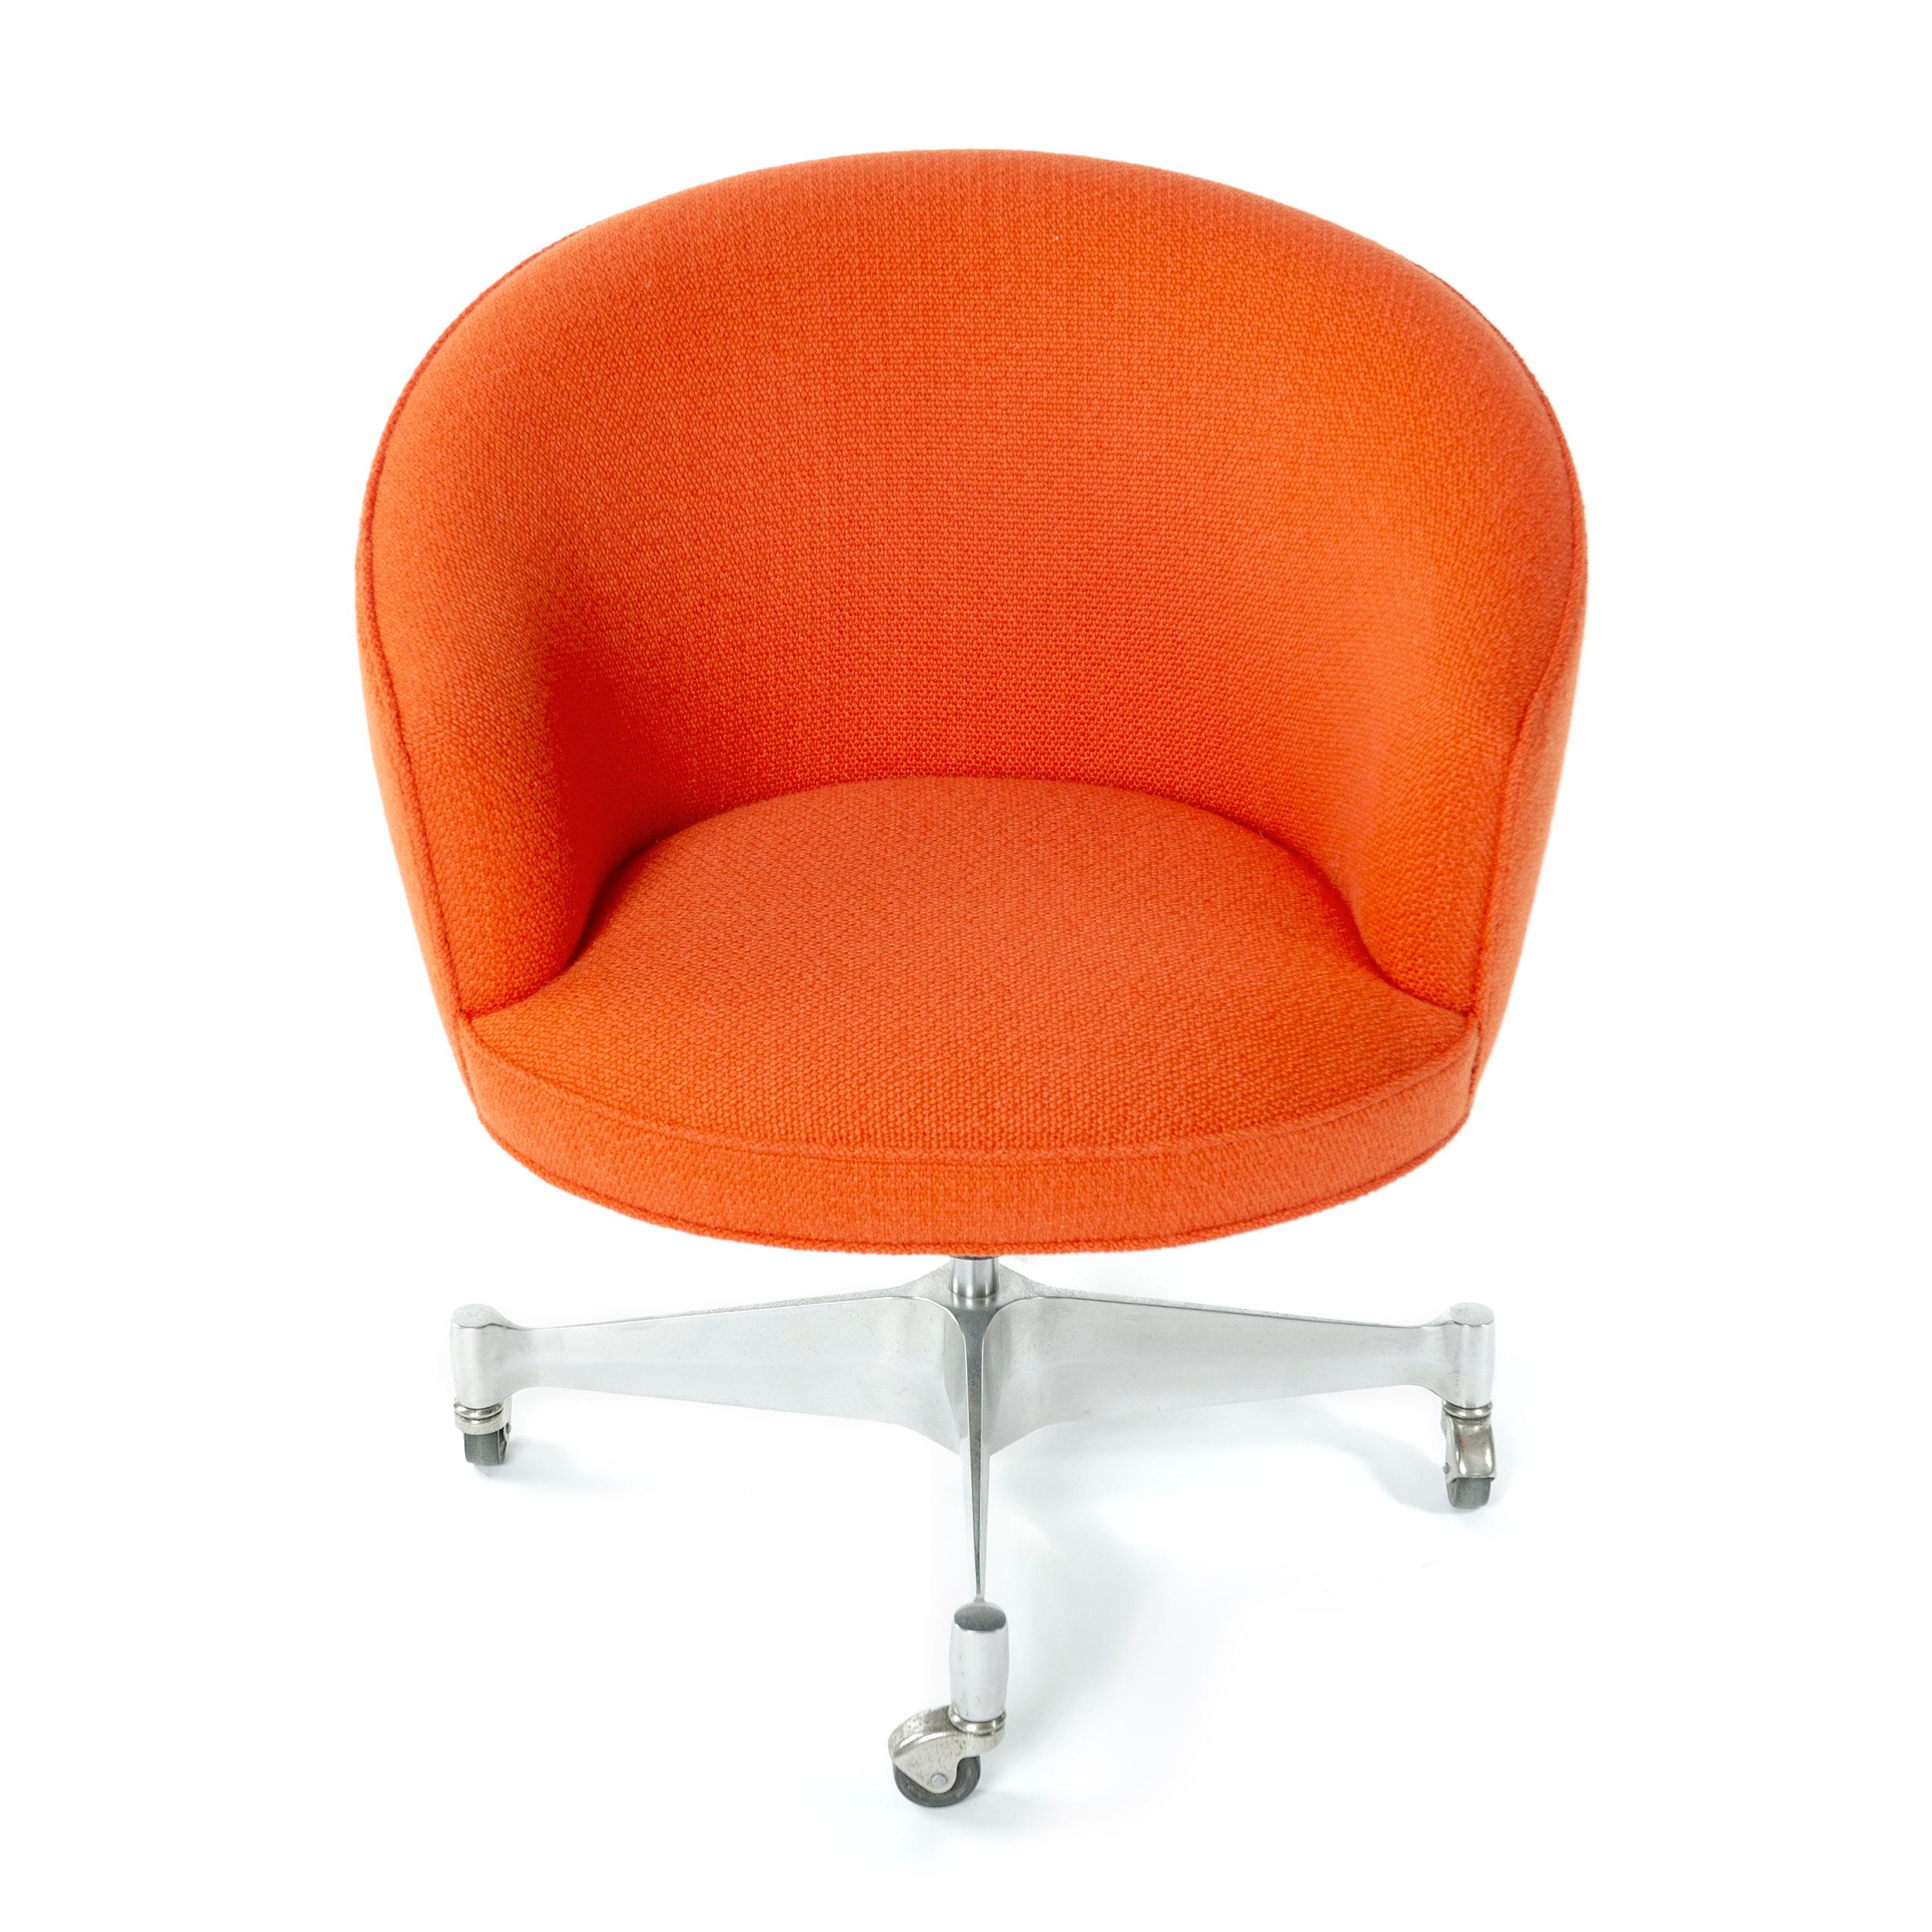 Ein von George Nelson entworfener rollender Schreibtischstuhl mit orangefarbenem Stoff, der von einem drehbaren Fuß mit Rollen getragen wird. Hergestellt von George Nelson and Associates in den 1960er Jahren. Neu gepolstert.